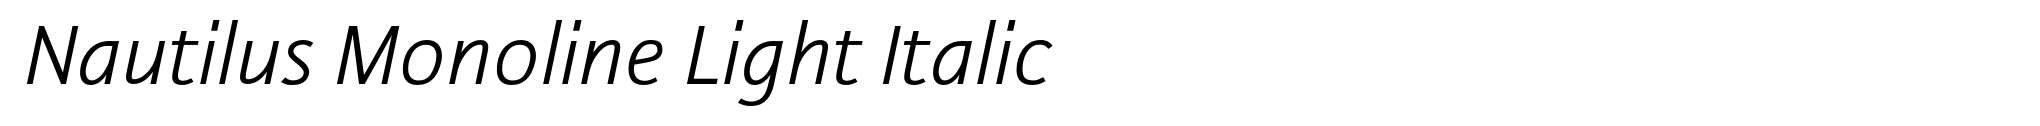 Nautilus Monoline Light Italic image